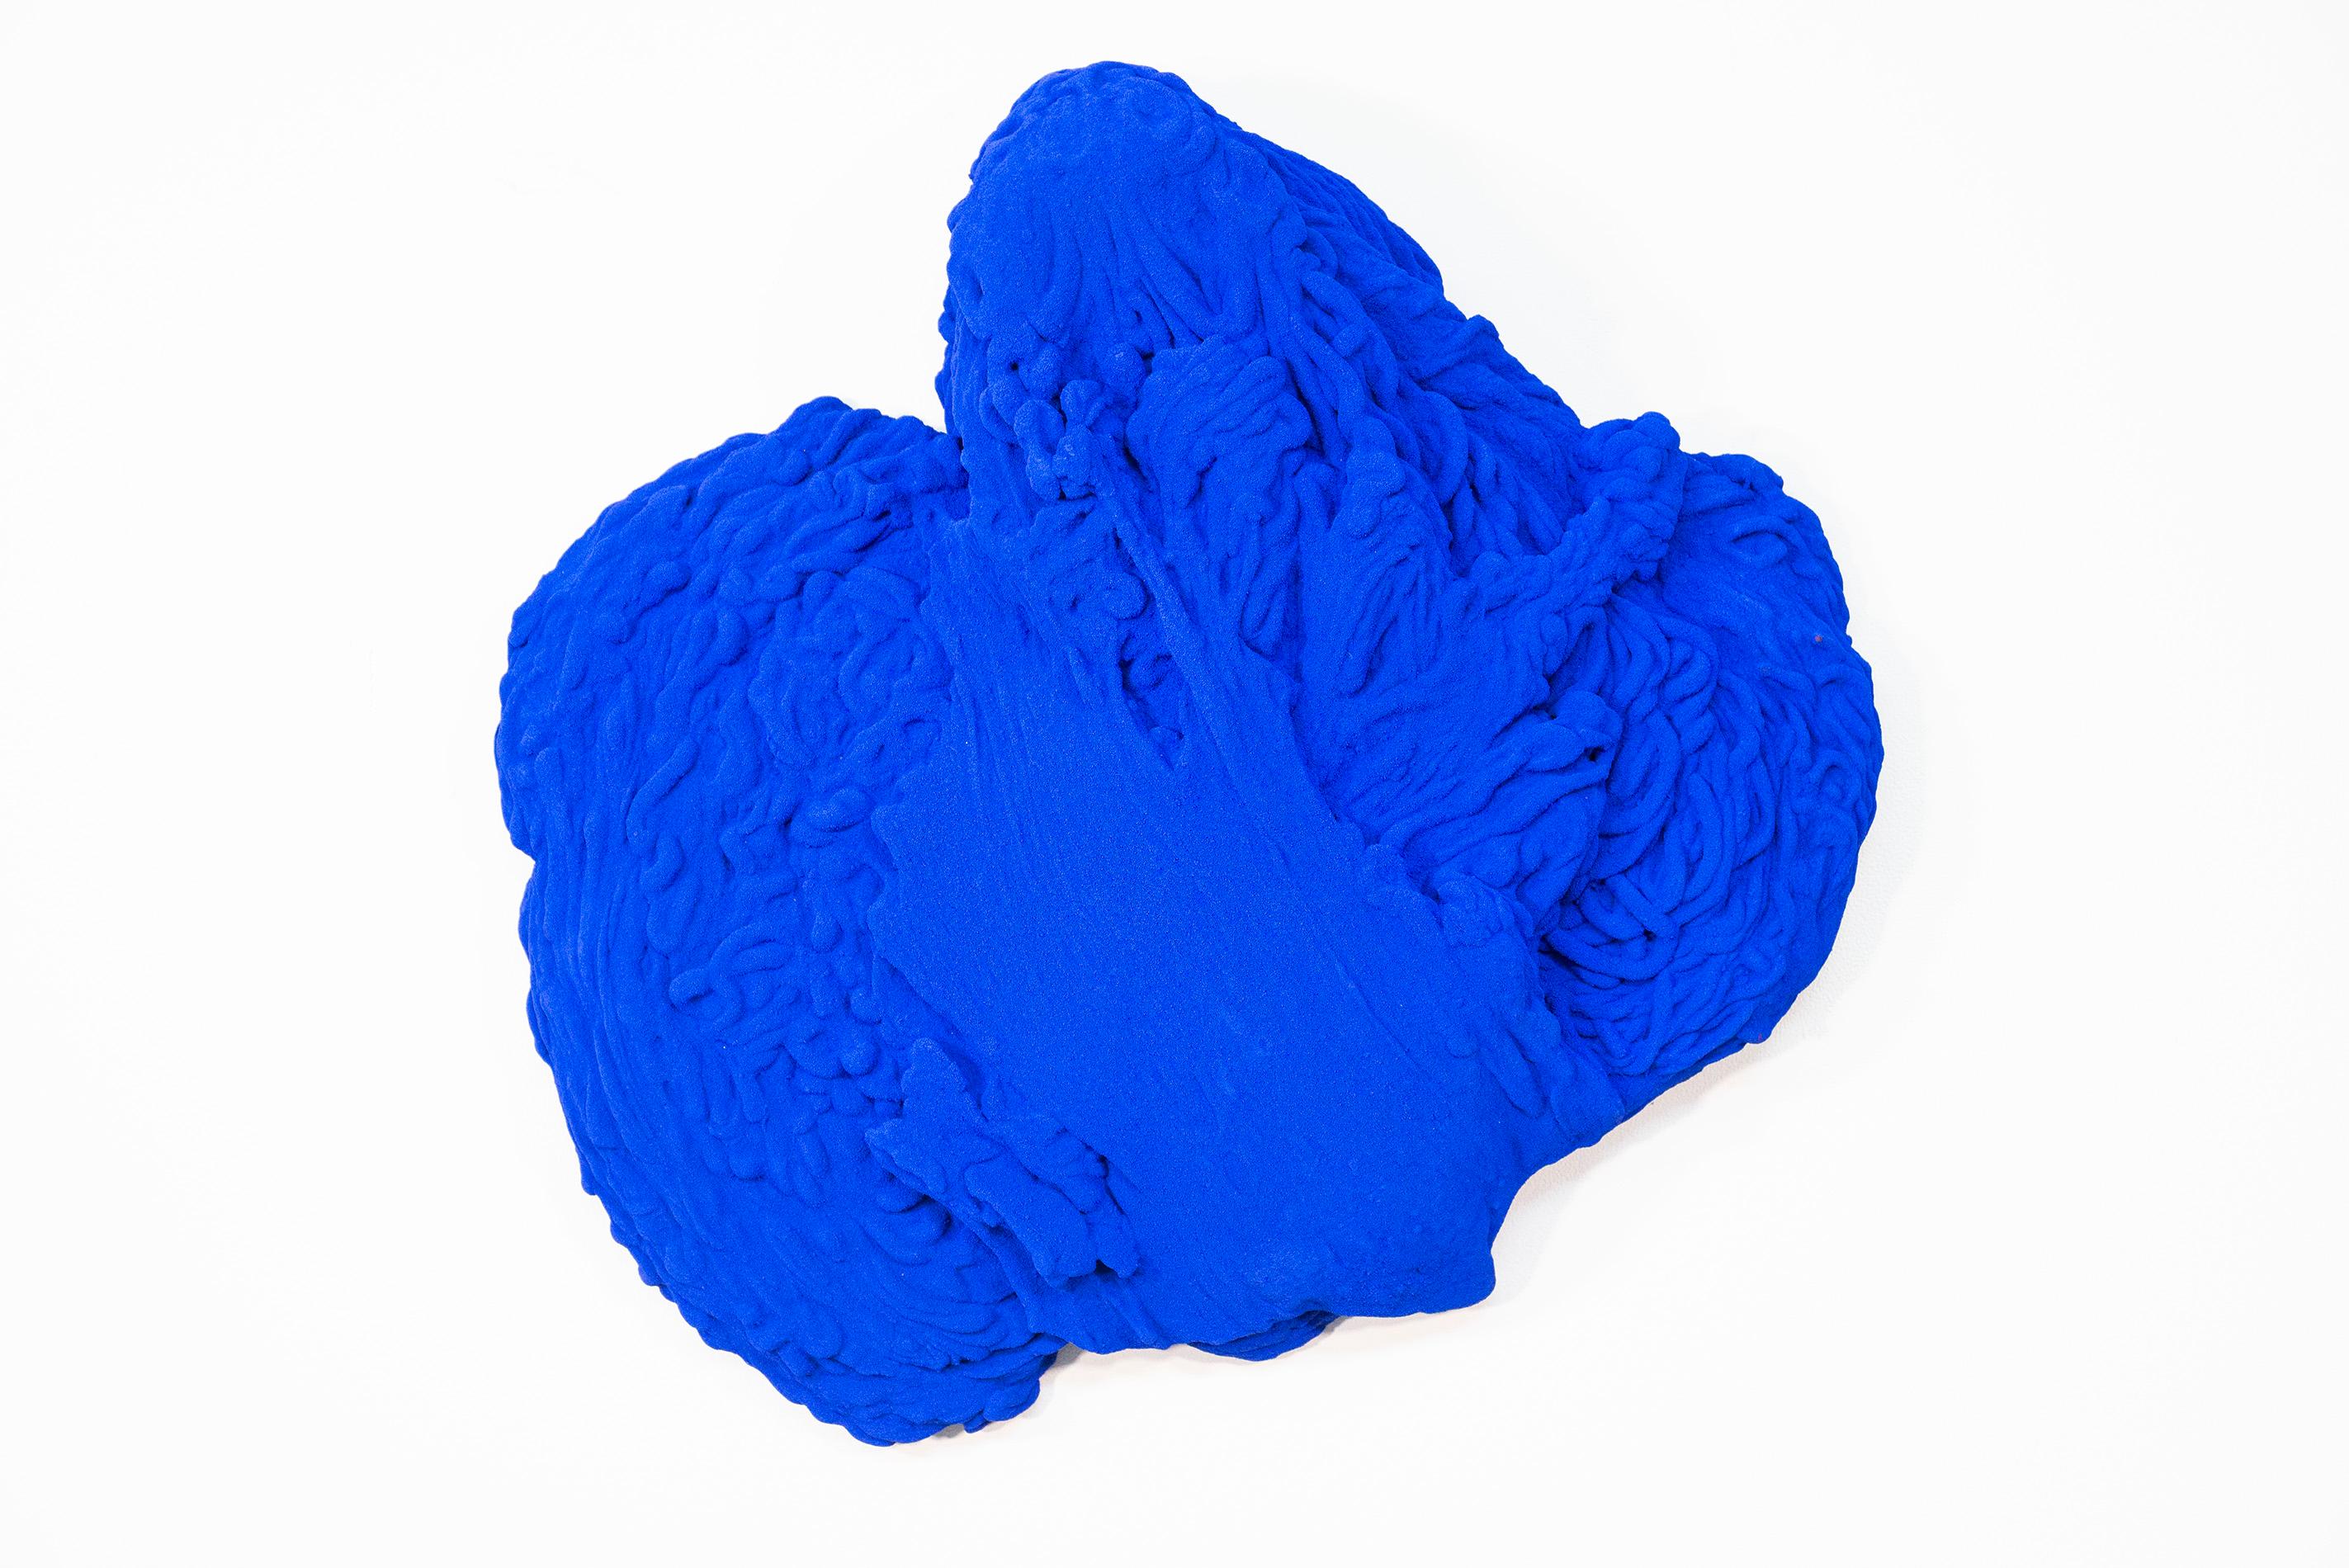 Blau Matter 2 - matt, blau, strukturiert, abstrakt, Mischtechnik-Wandskulptur